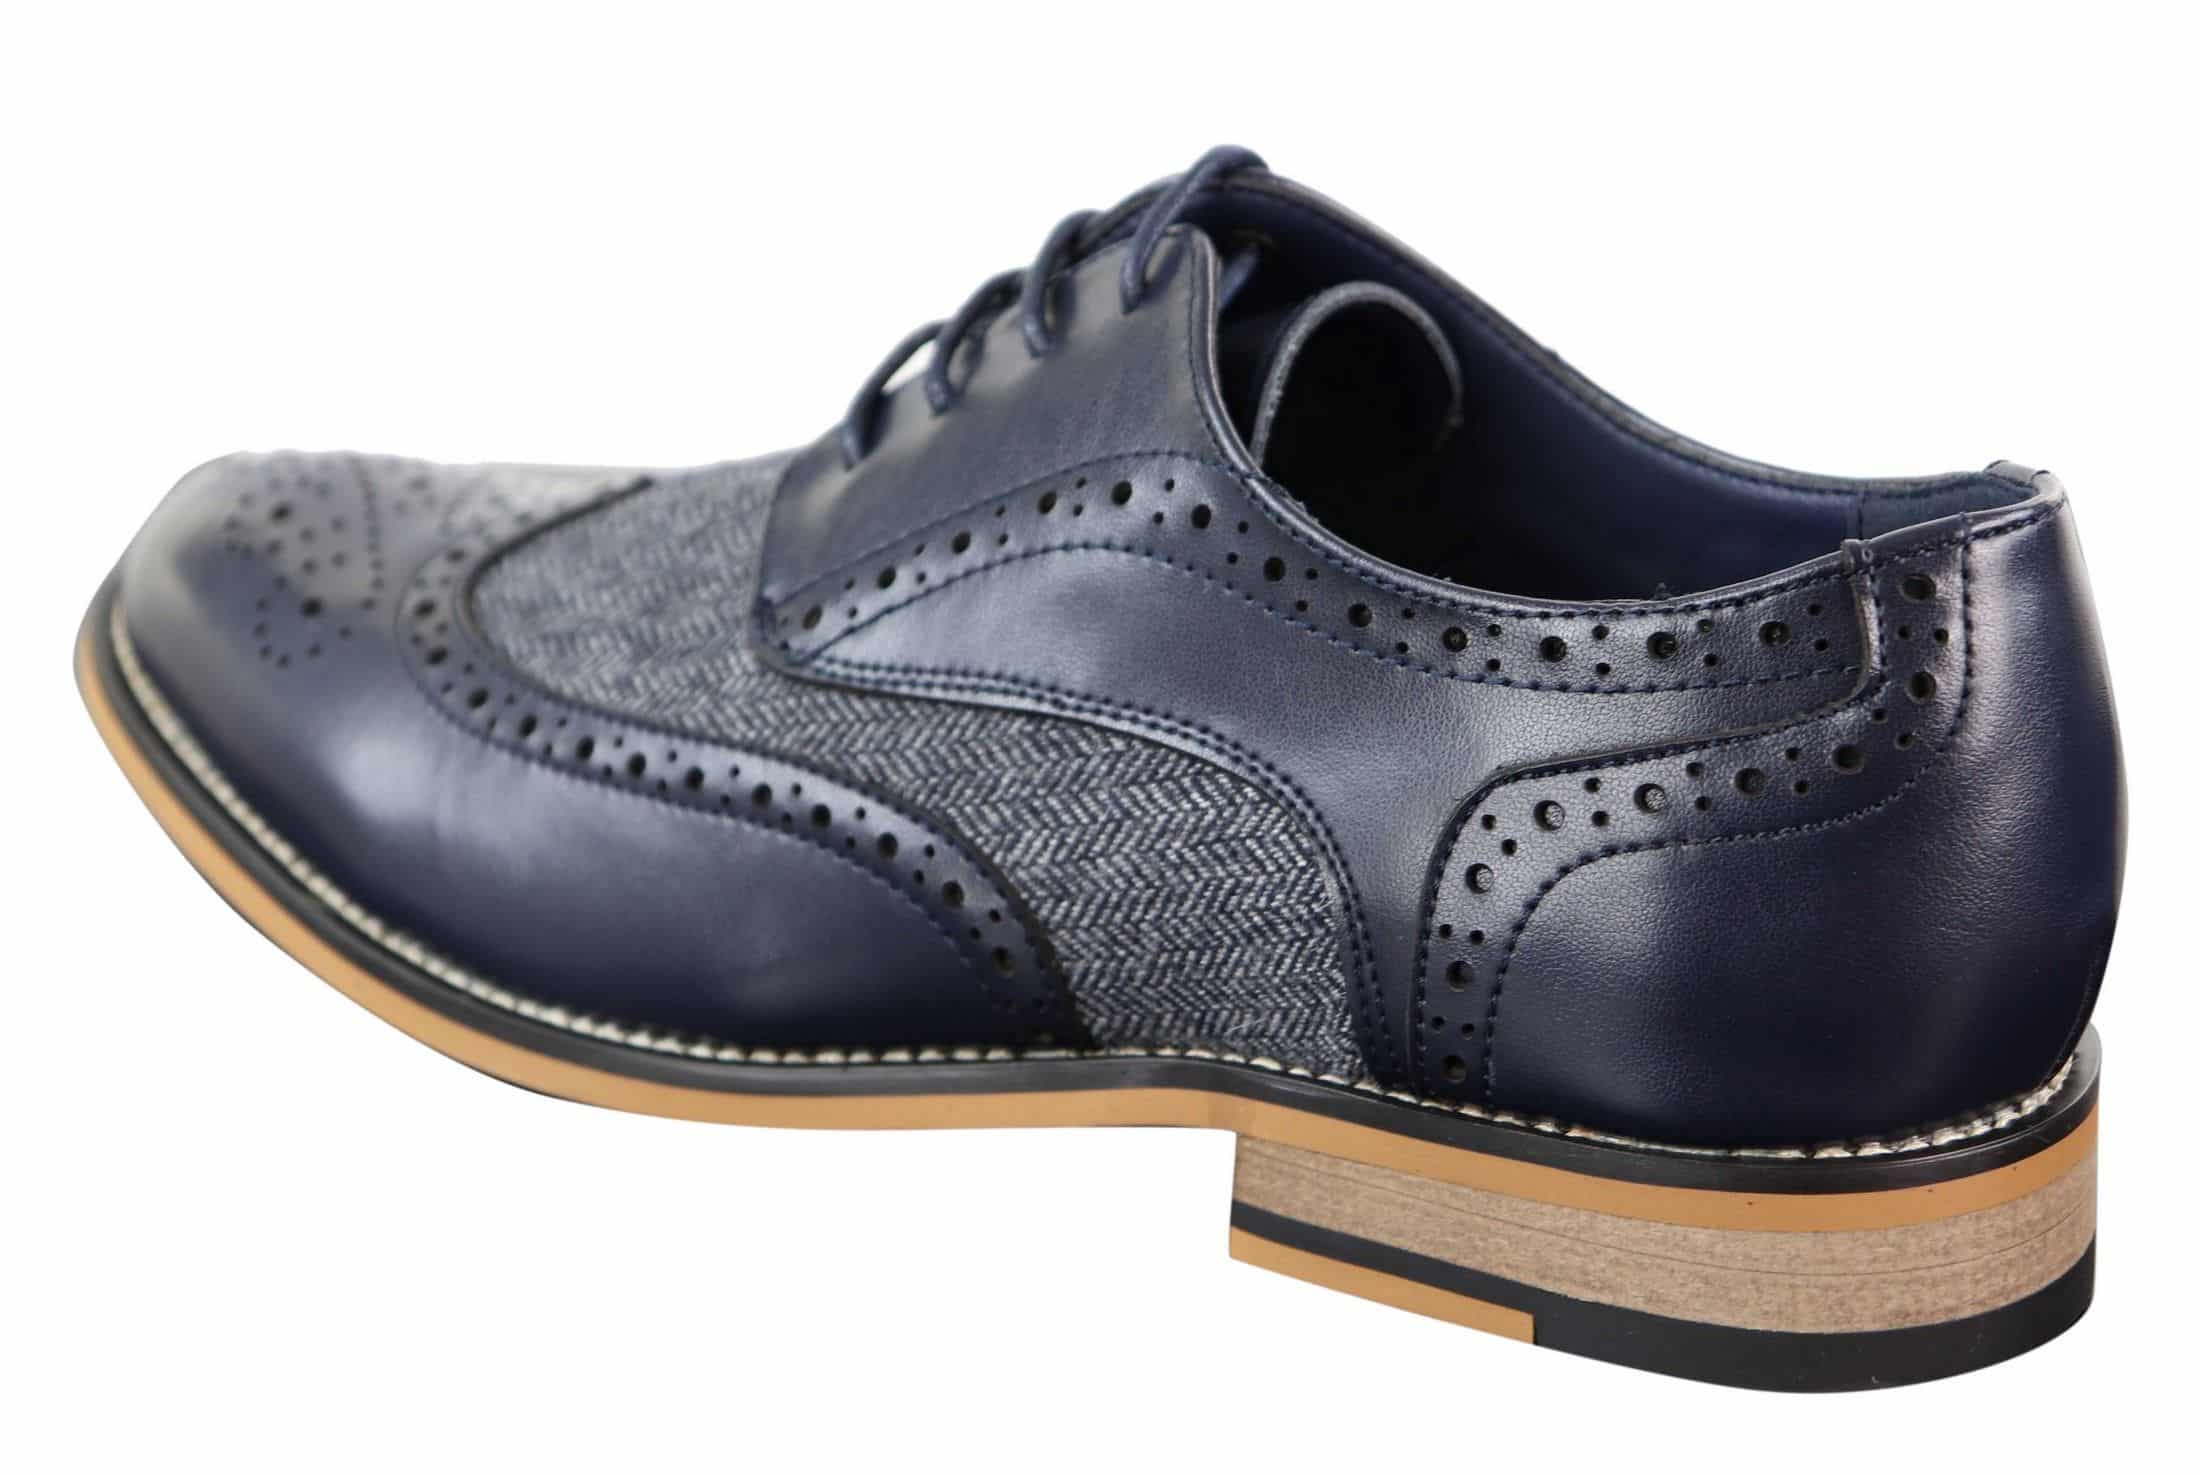 Cavani Horatio - Men's Tweed & Leather Oxford Shoes | Happy Gentleman